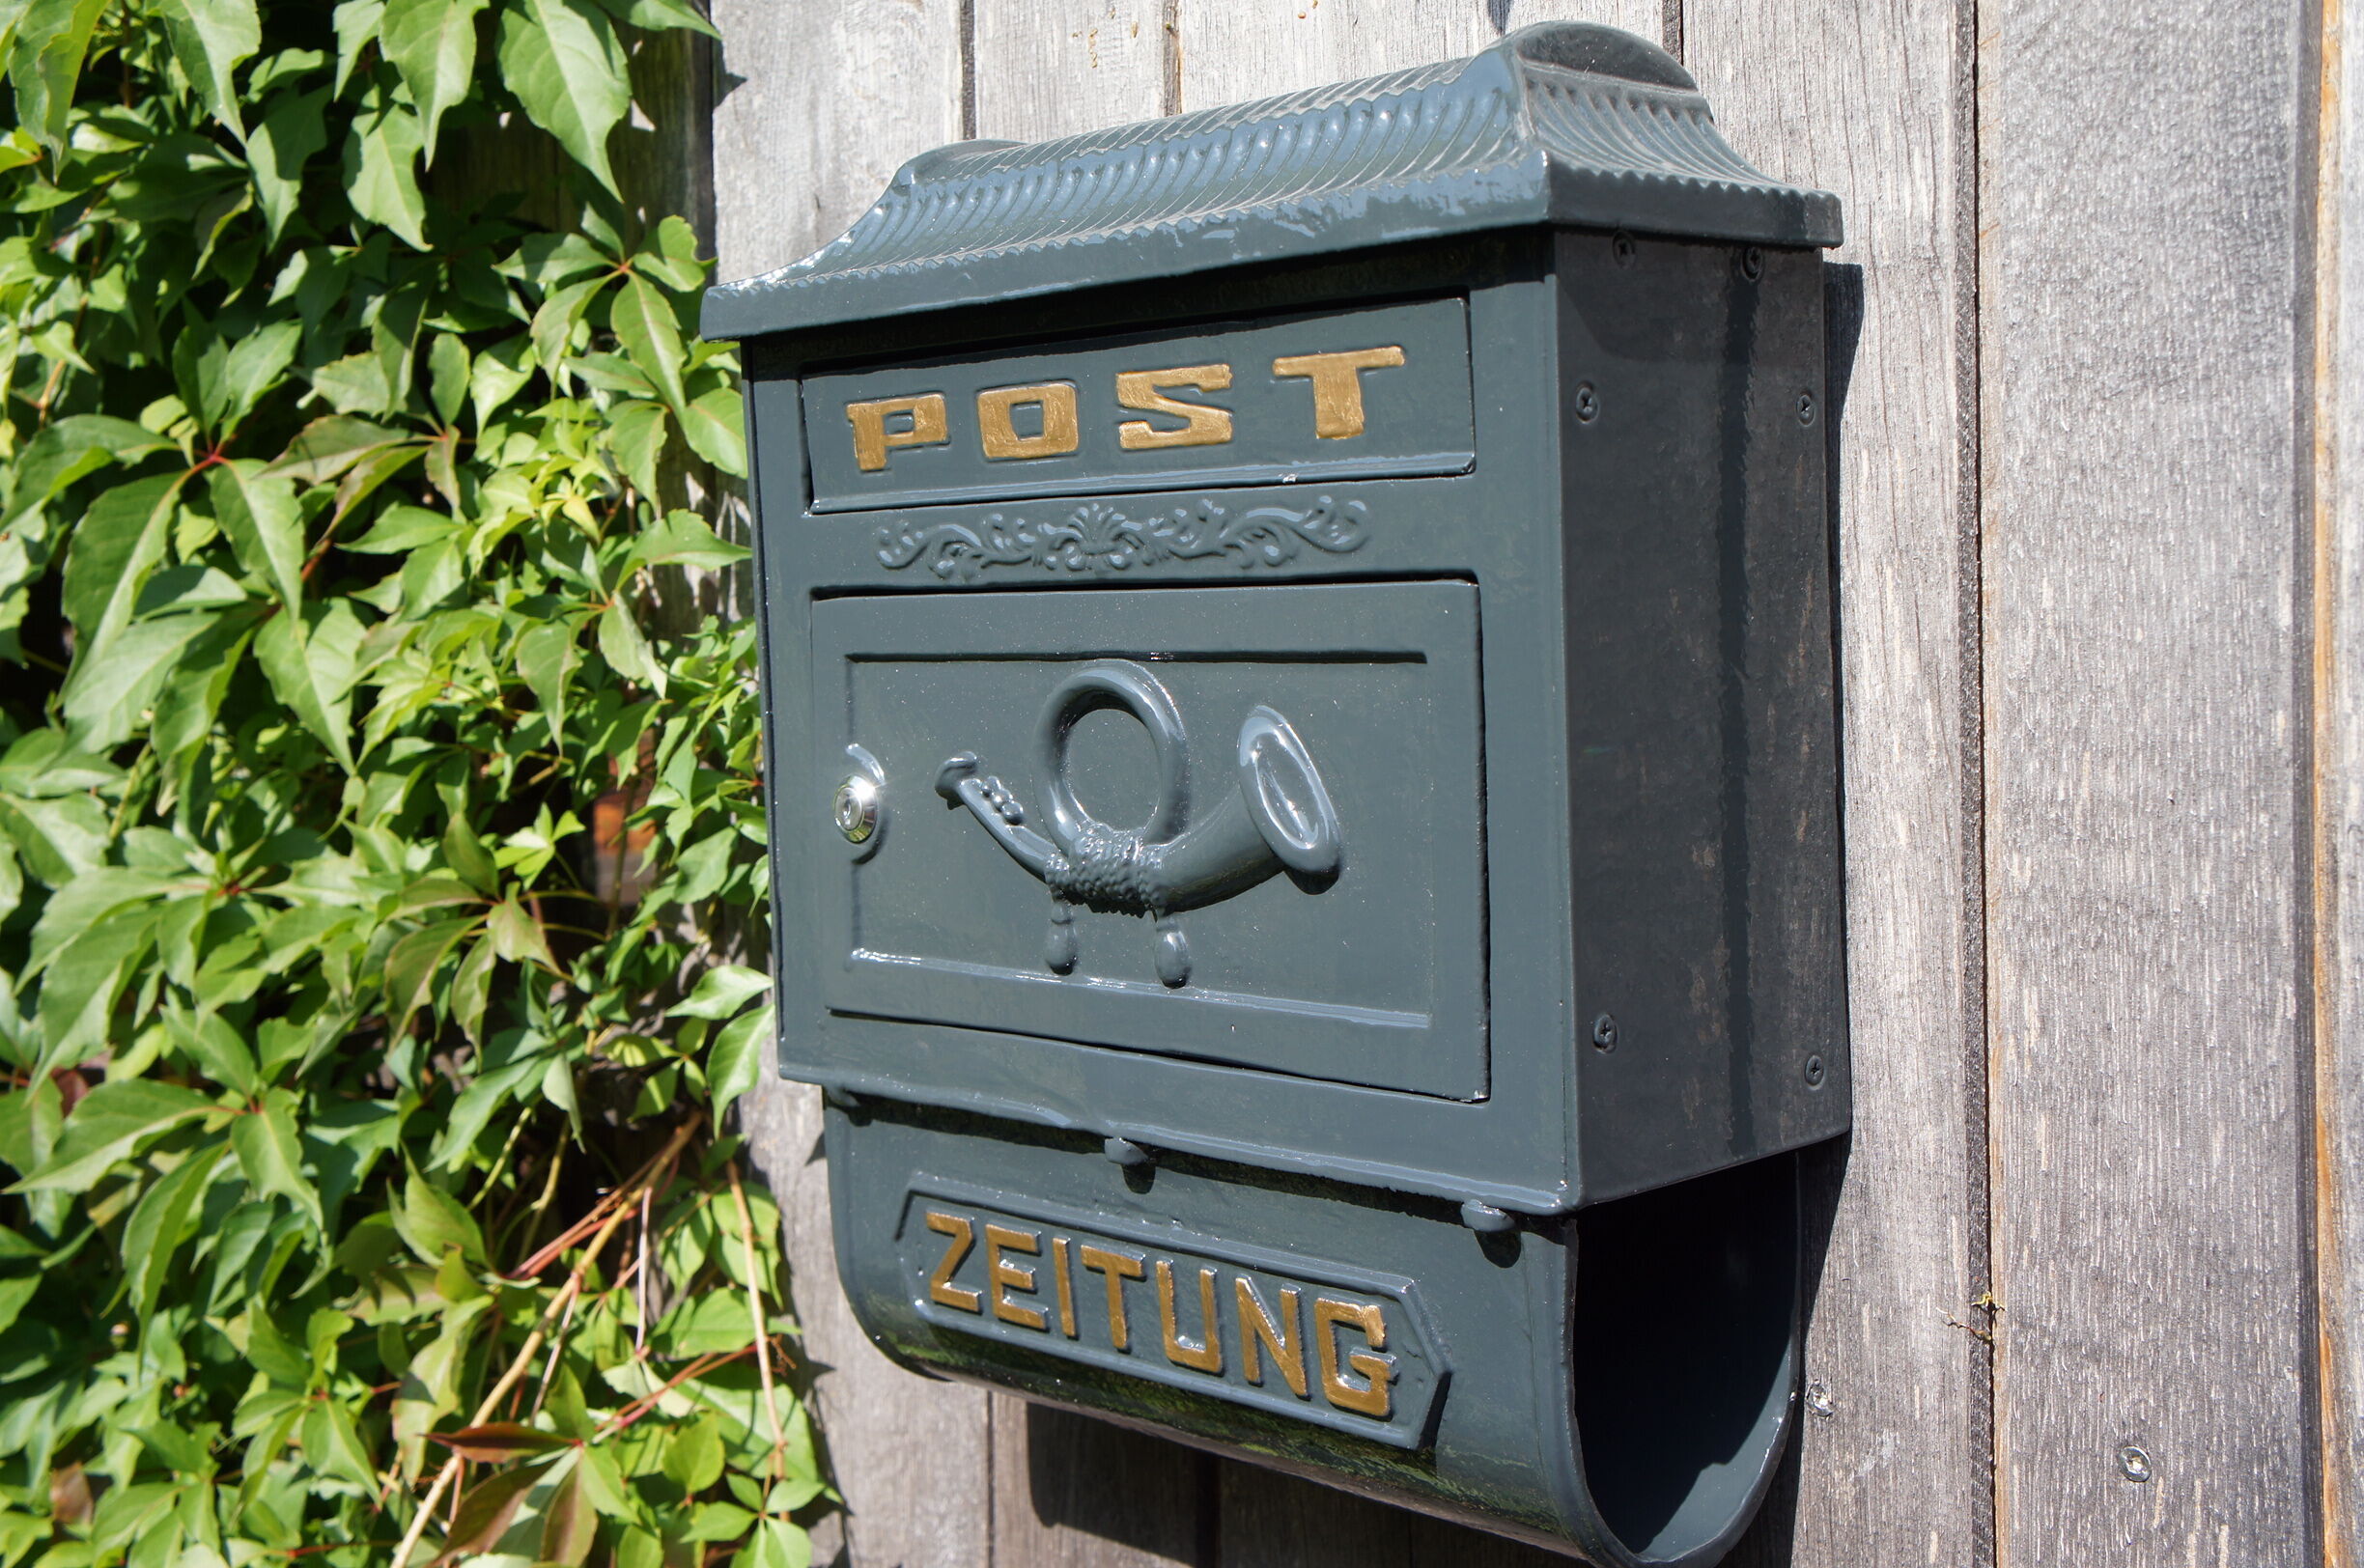 Wandbriefkasten, Postkasten, Briefkasten mit Zeitungsrolle, Brief, Post